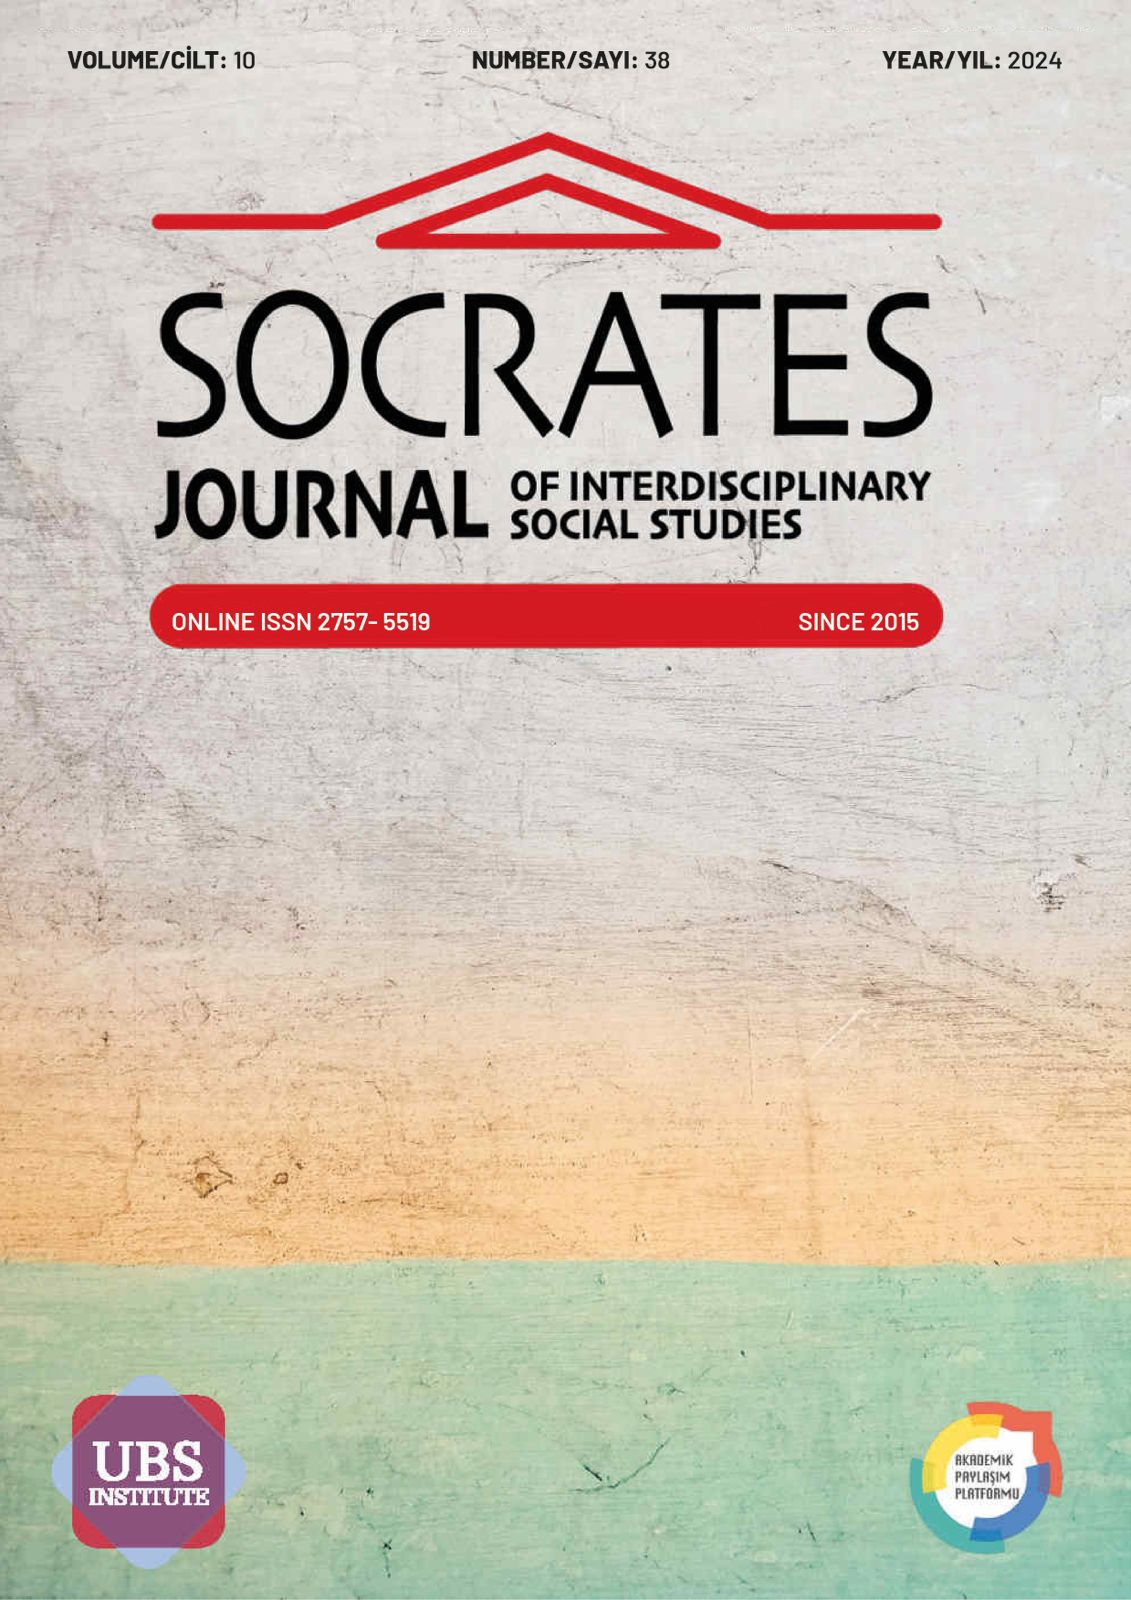 					Cilt 10 Sayı 38 (2024): SOCRATES JOURNAL OF INTERDISCIPLINARY SOCIAL STUDIES (ERKEN GÖRÜNÜM) Gör
				